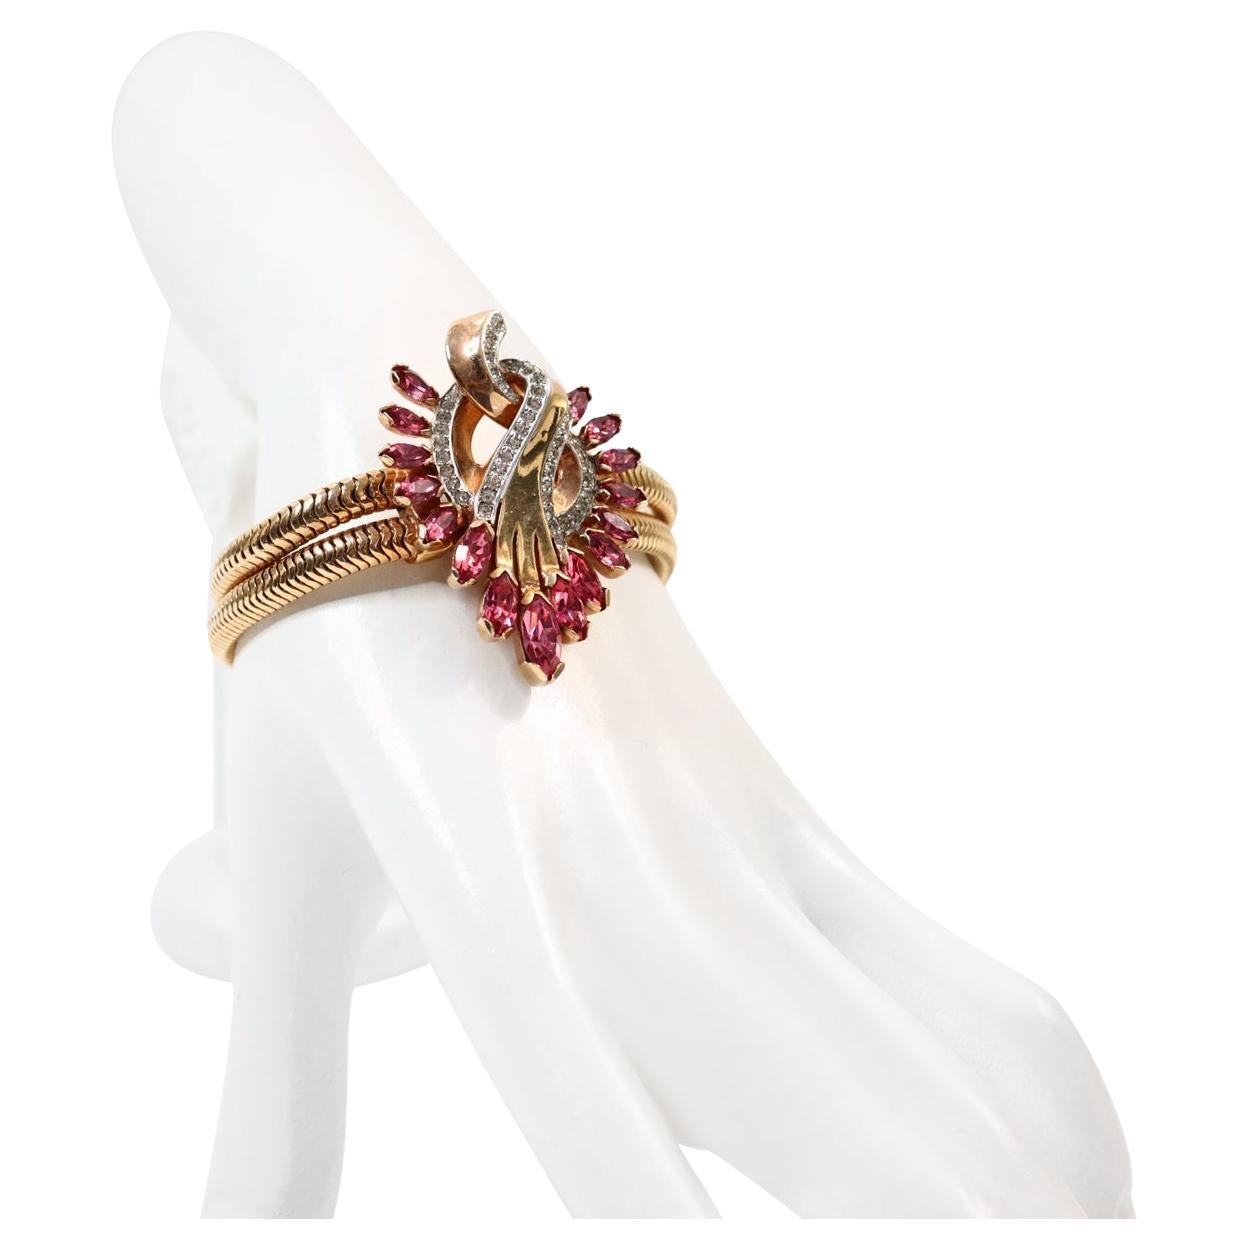 Vintage Mazer Gold und Diamanten mit rosa Armband, ca. 1960er Jahre.  Dies ist eines der schönsten und am besten verarbeiteten Armbänder in der Collection'S. Das sieht aus wie feiner Schmuck in seiner besten Form. Es gibt zwei schlangenähnliche